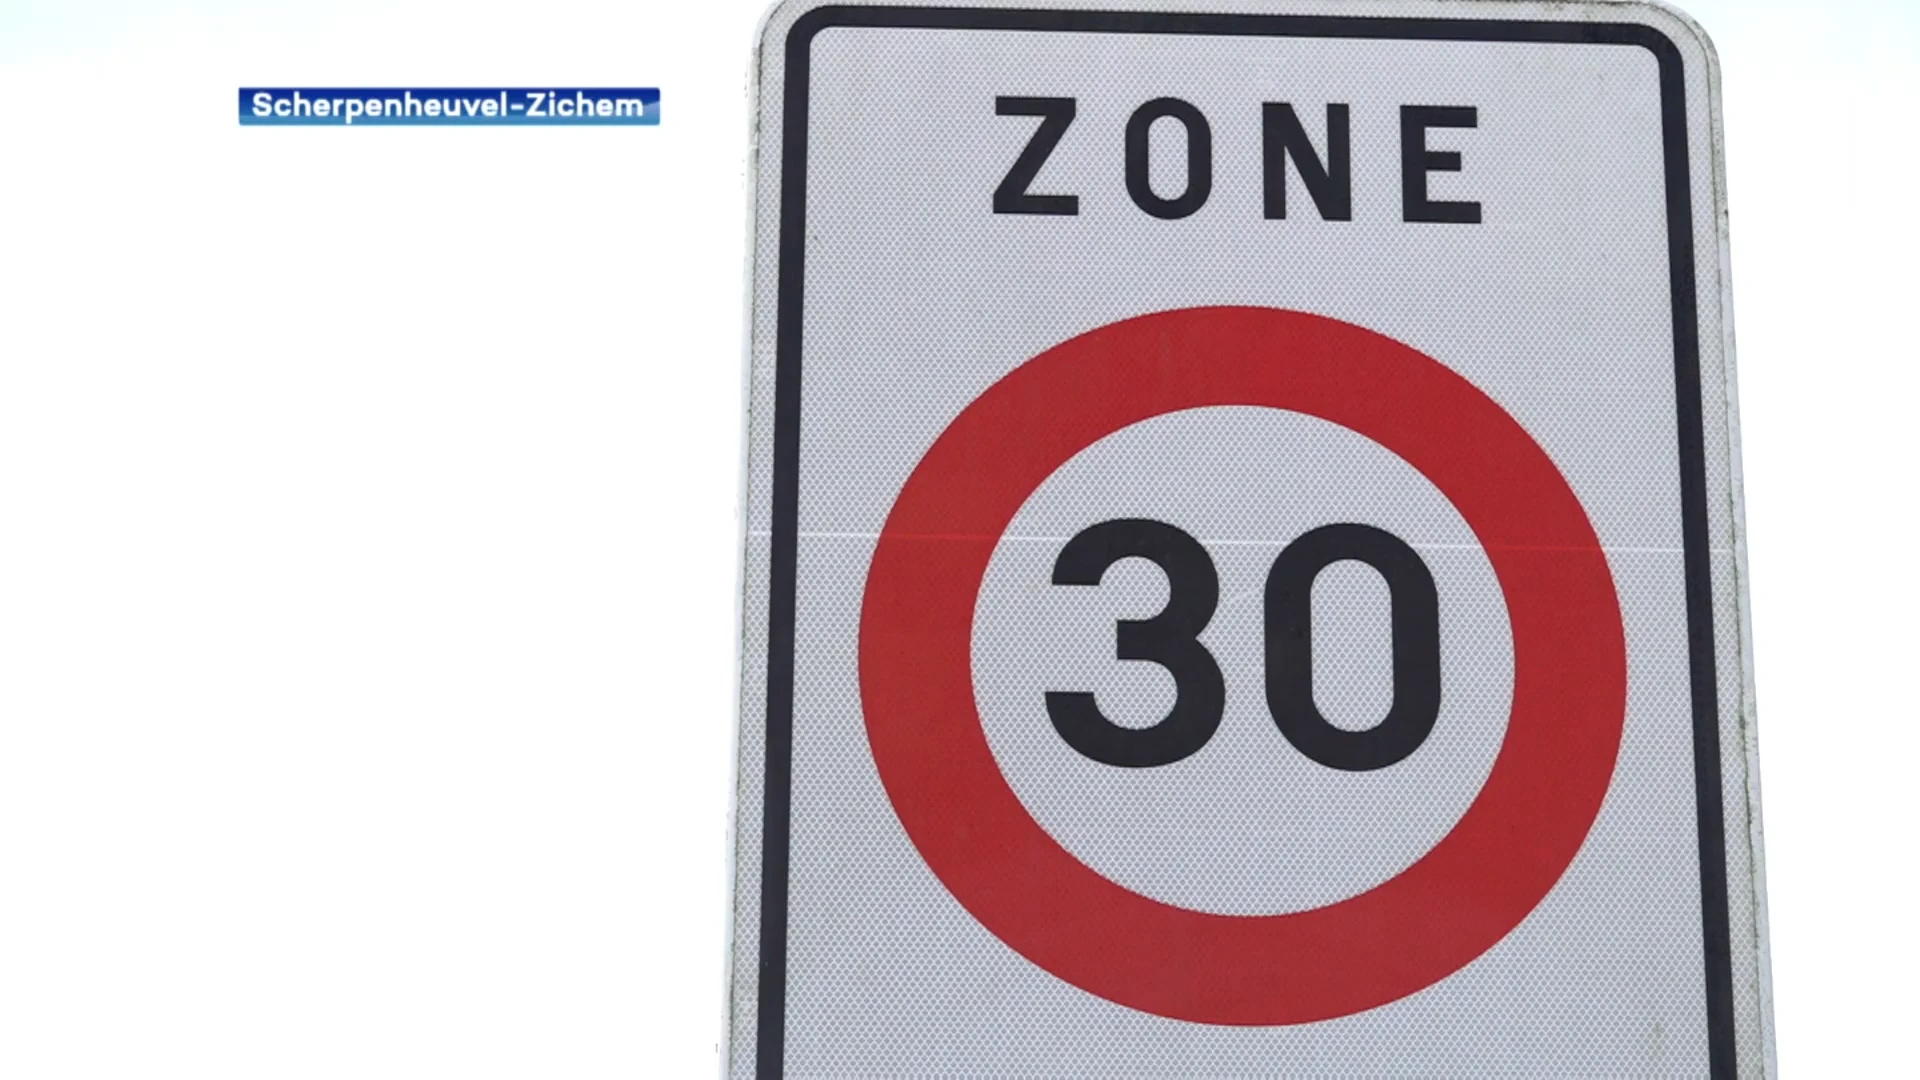 Zone 30 in Zichem uitgebreid tot voorbij spoorwegovergang: twee flitspalen moeten nieuwe snelheidsbeperking handhaven